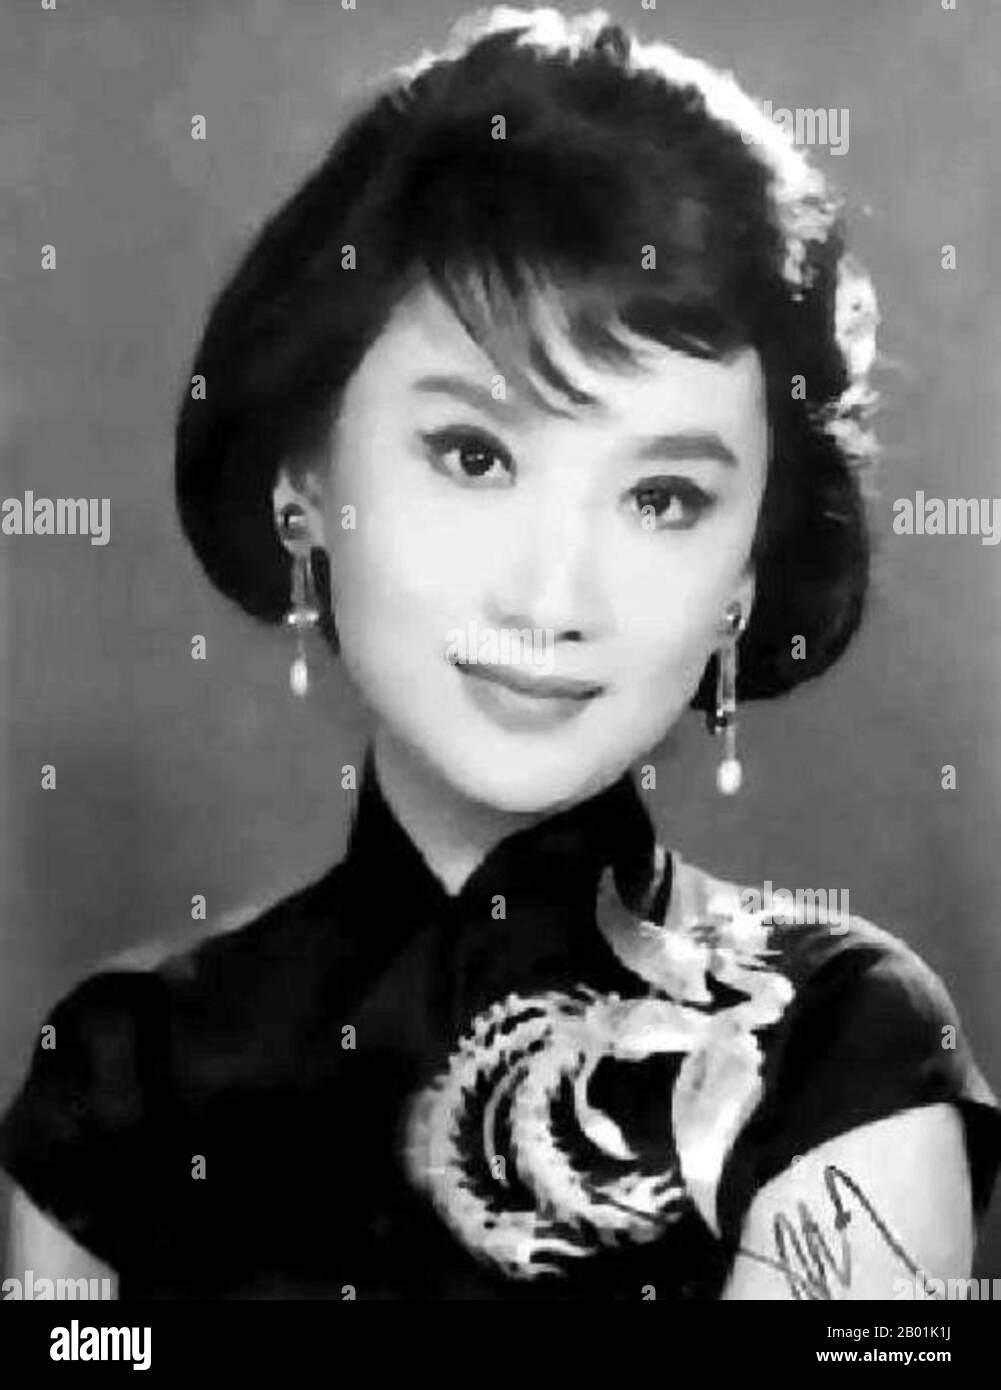 China: Xia Meng (16. Februar 1933 – 30. Oktober 2016), Schauspielerin und Filmproduzentin aus Hongkong, um 1950 Xia Meng (auch HSIA Moon oder Miranda Yang; * Yang Meng) ist eine in Hongkong lebende Schauspielerin und Filmproduzentin. Sie war die Schlüsselfigur der Mandarin-Filmszene im linken Flügel Hongkongs. Stockfoto